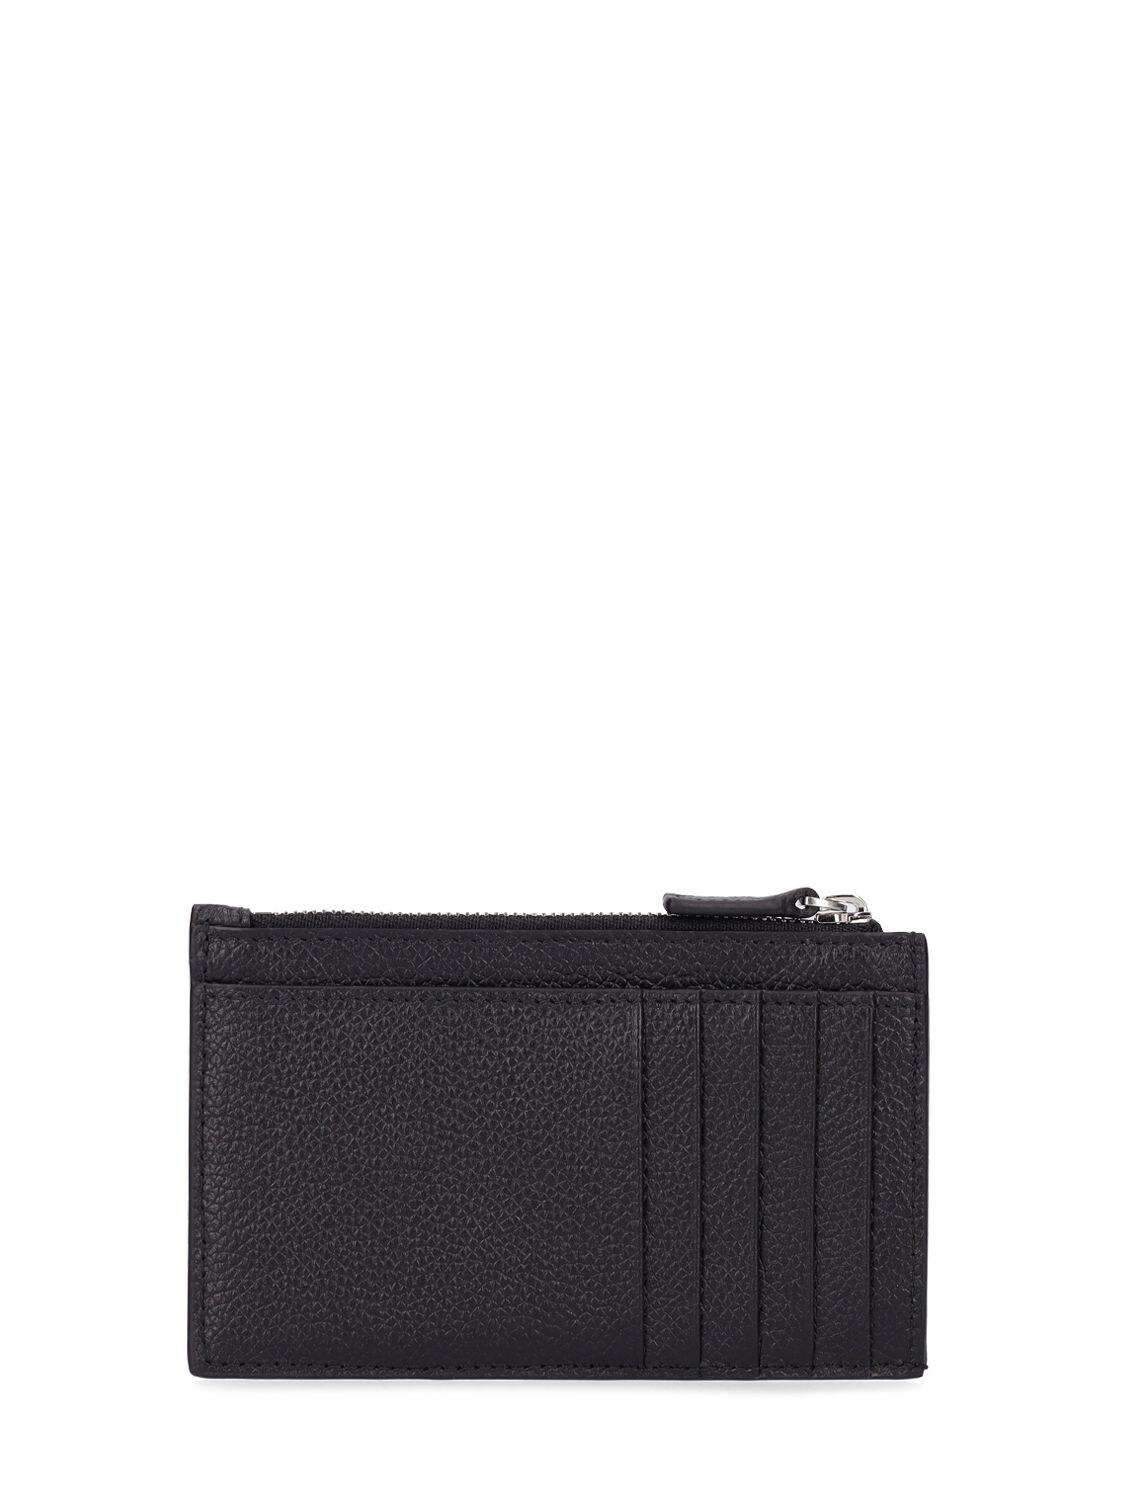 Shop Balenciaga Logo Leather Wallet In Black